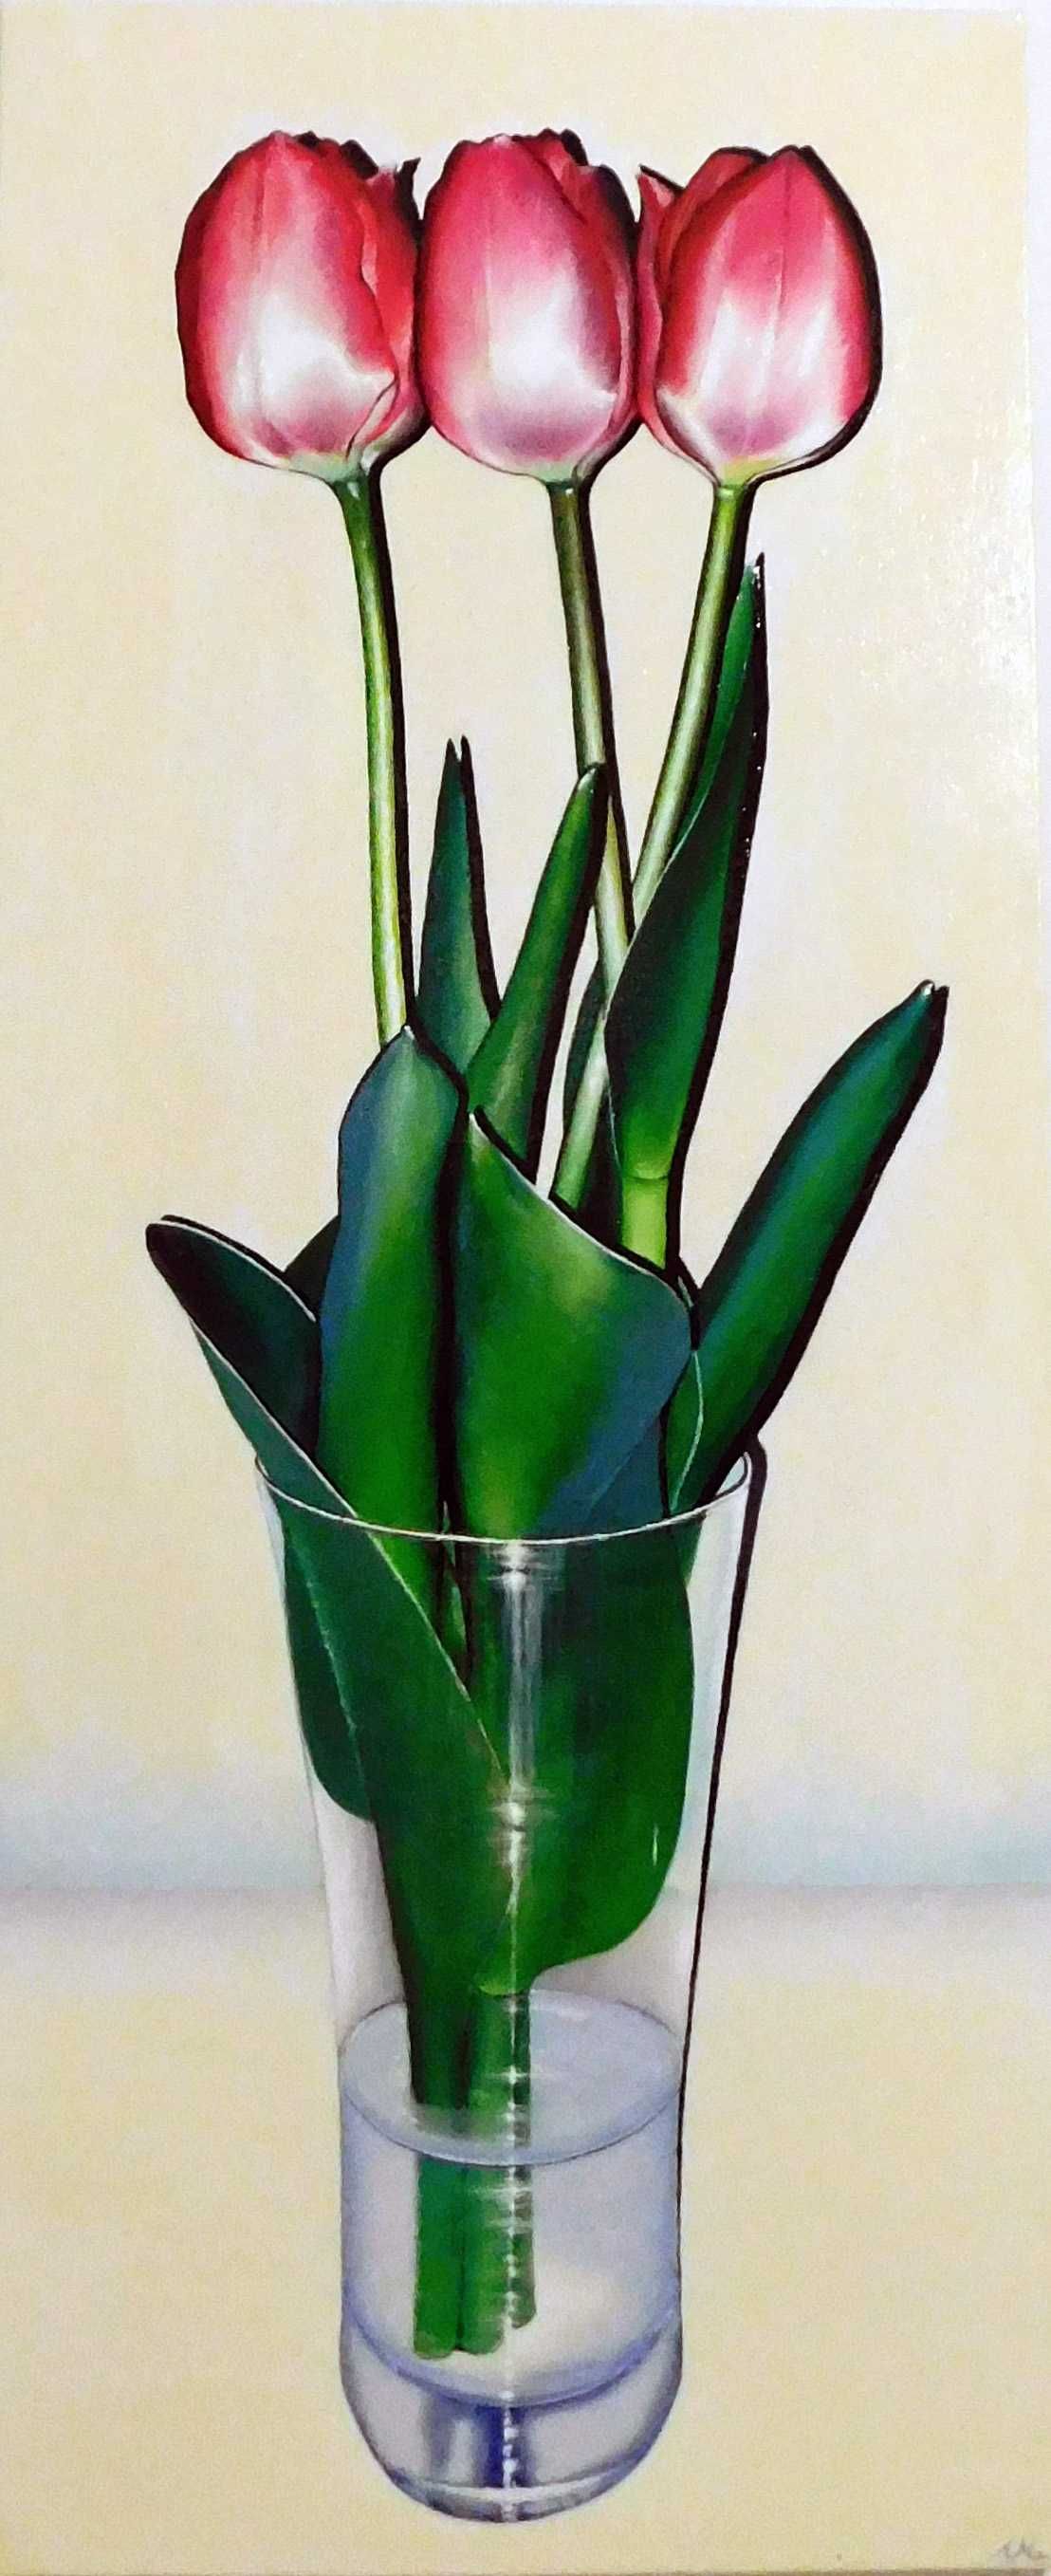 Obraz akrylowy ręcznie malowany pt: "Tulipany"